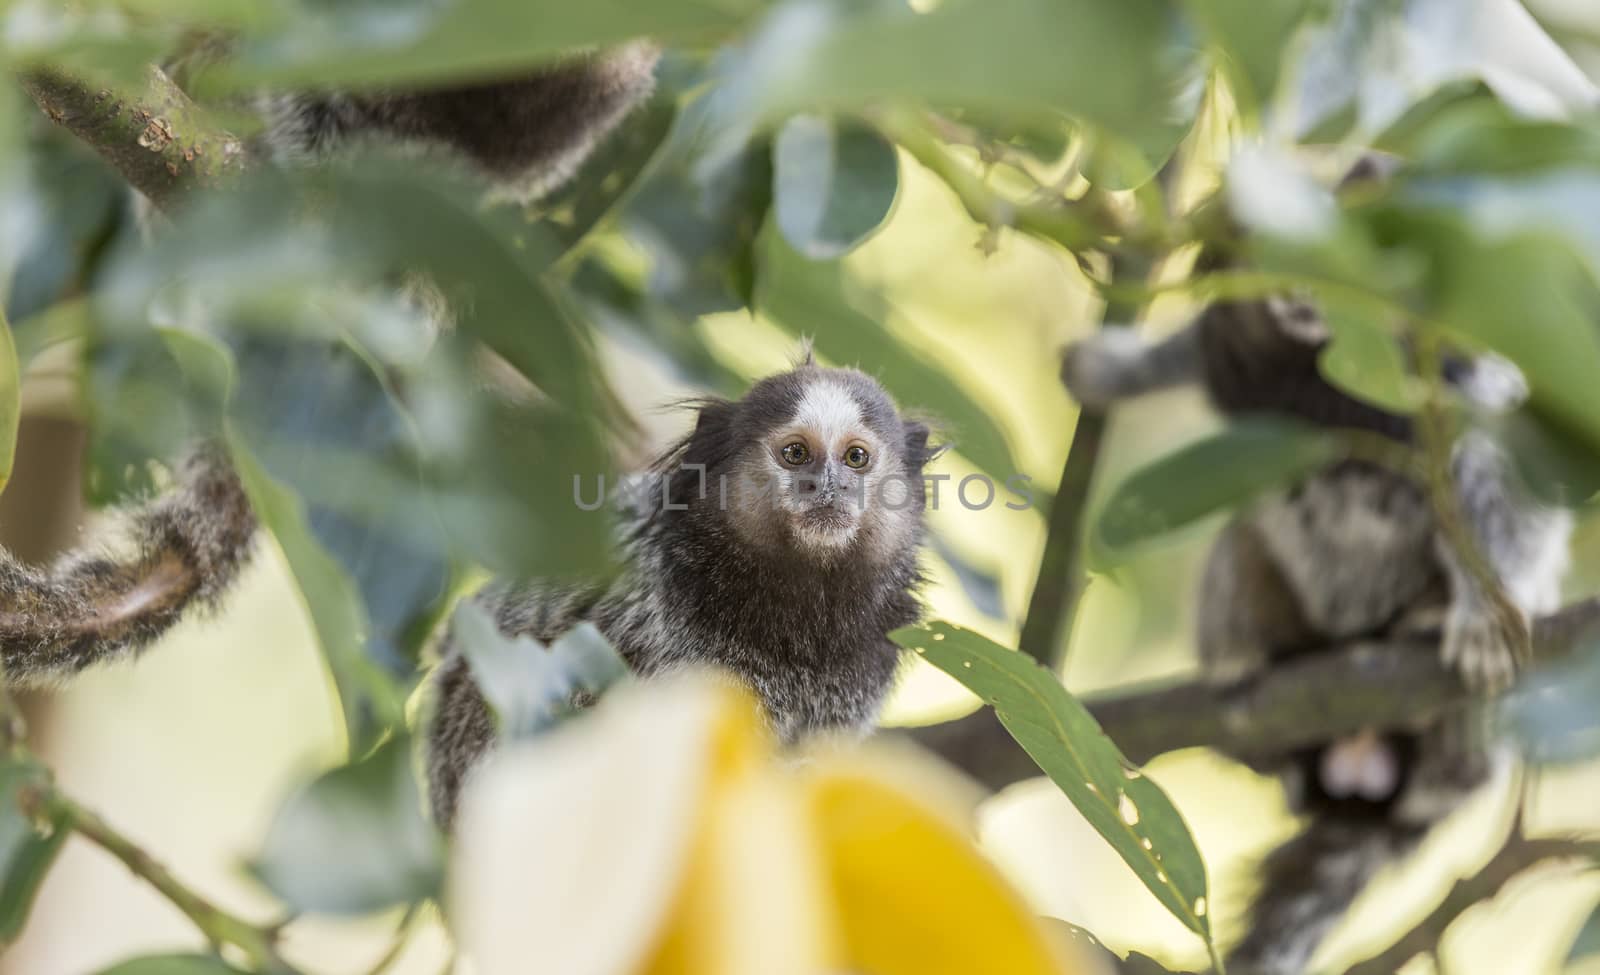 Marmoset monkeys eating a banana